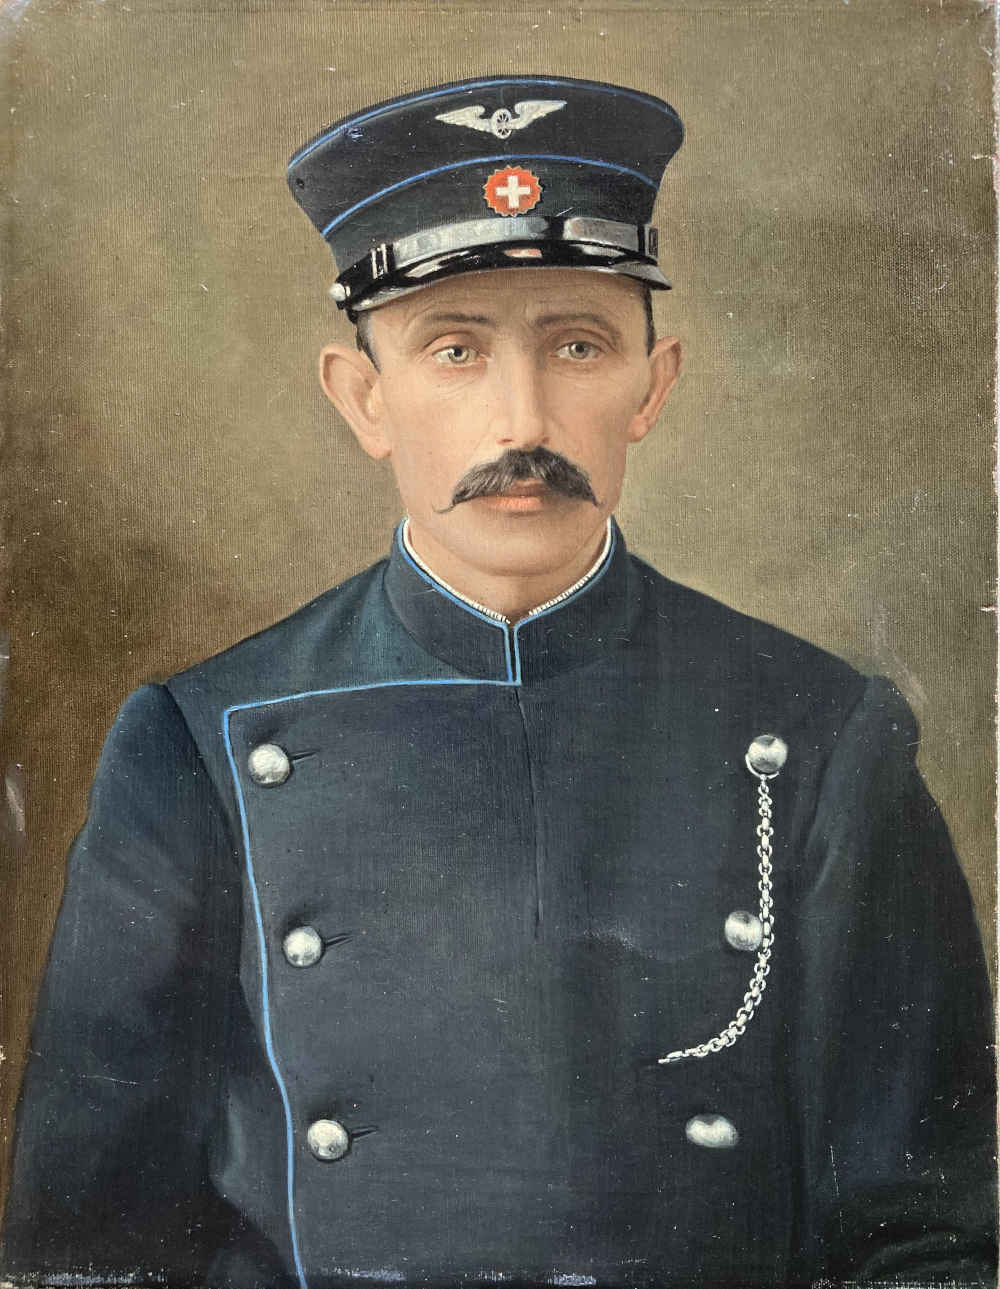 Peinture à l’huile de cheminot, contrôleur CFF, assistant clientèle, contrôleur de billettes en uniforme CFF de 1902-1932.